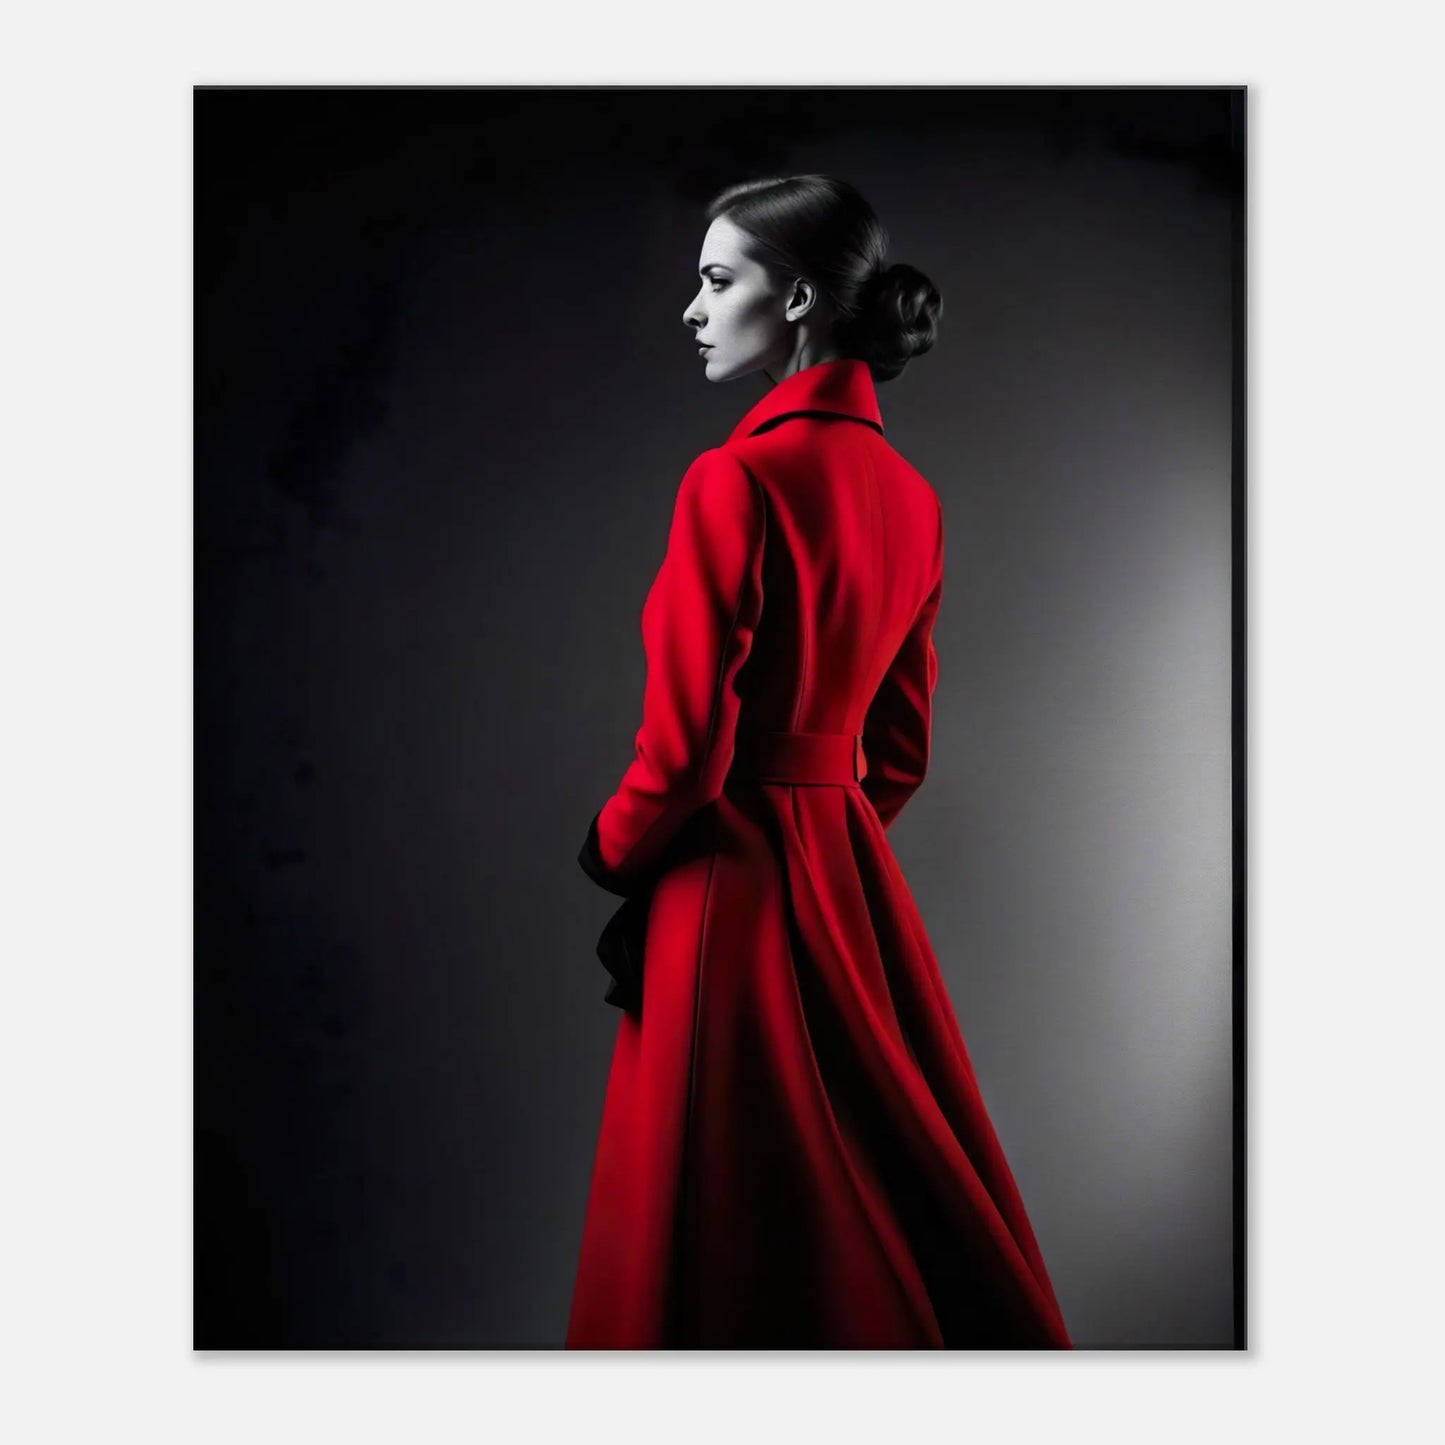 Leinwandbild - Frau im roten Mantel - Schwarz-Weiß Stil, KI-Kunst - RolConArt, Schwarz-Weiß mit Akzentfarben, 50x60-cm-20x24